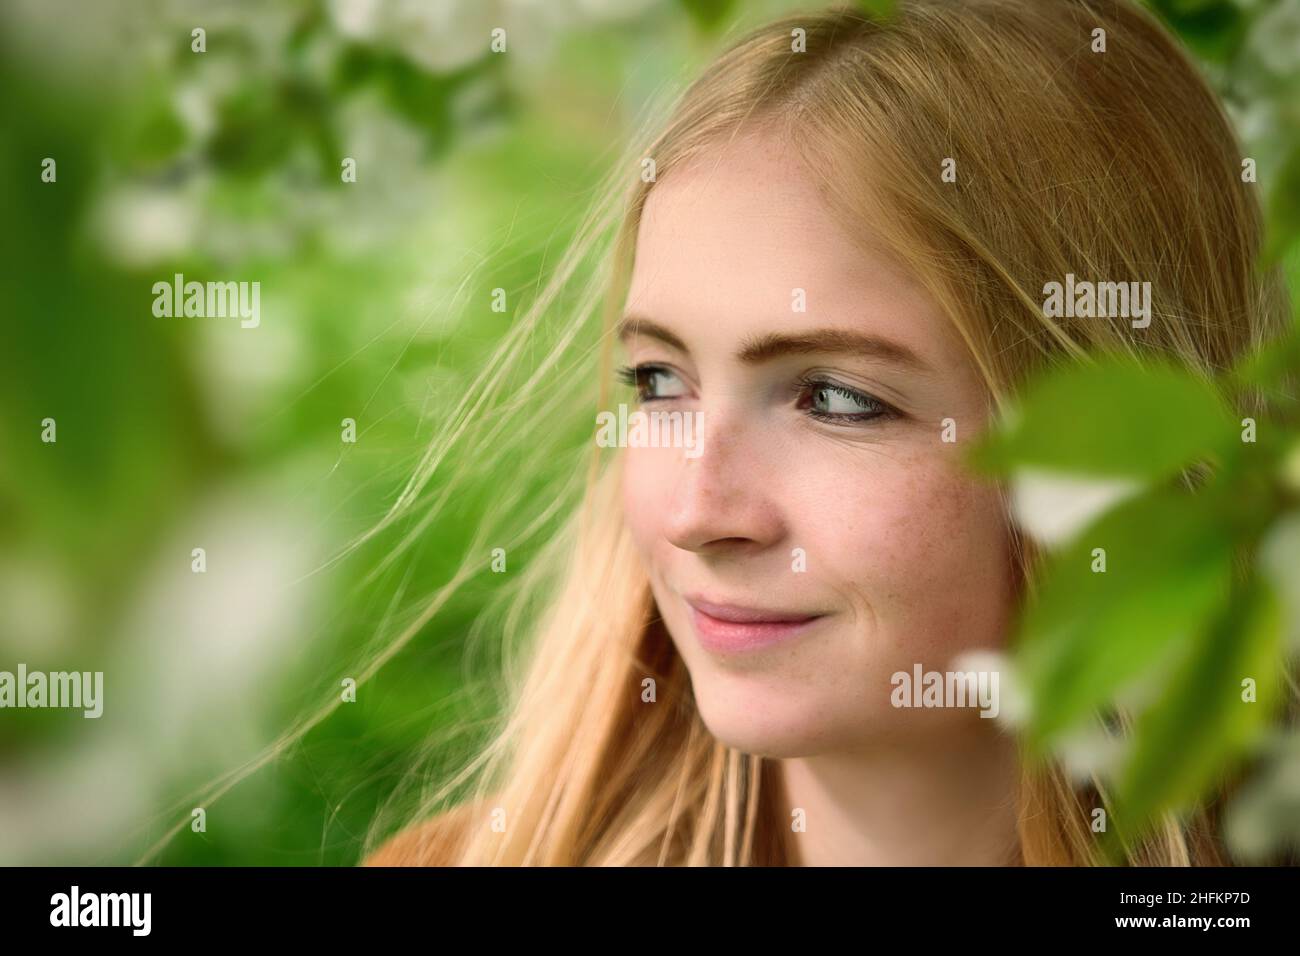 Porträt einer schönen lächelnden Frau in der Natur, eingerahmt von verschwommenen Zweigen mit frischen grünen Blättern und weißen Blüten Stockfoto